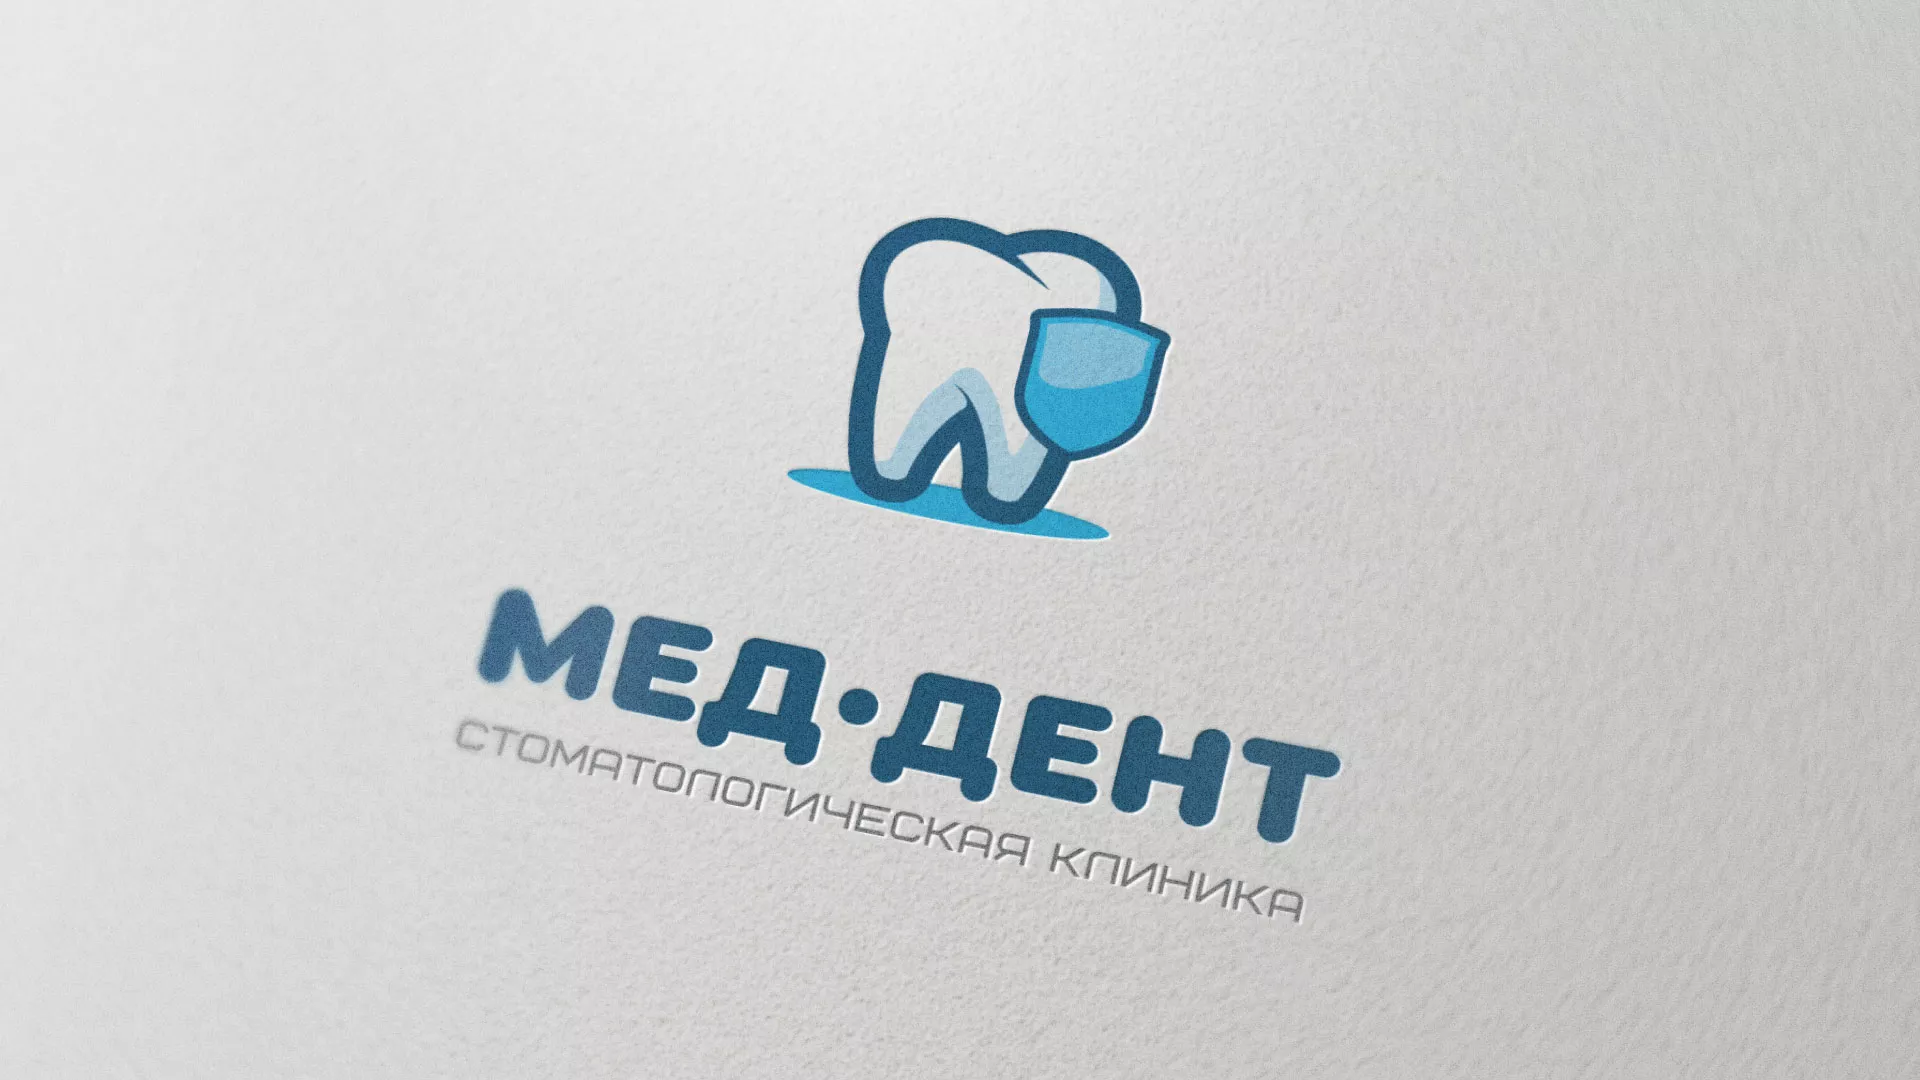 Разработка логотипа стоматологической клиники «МЕД-ДЕНТ» в Киржаче